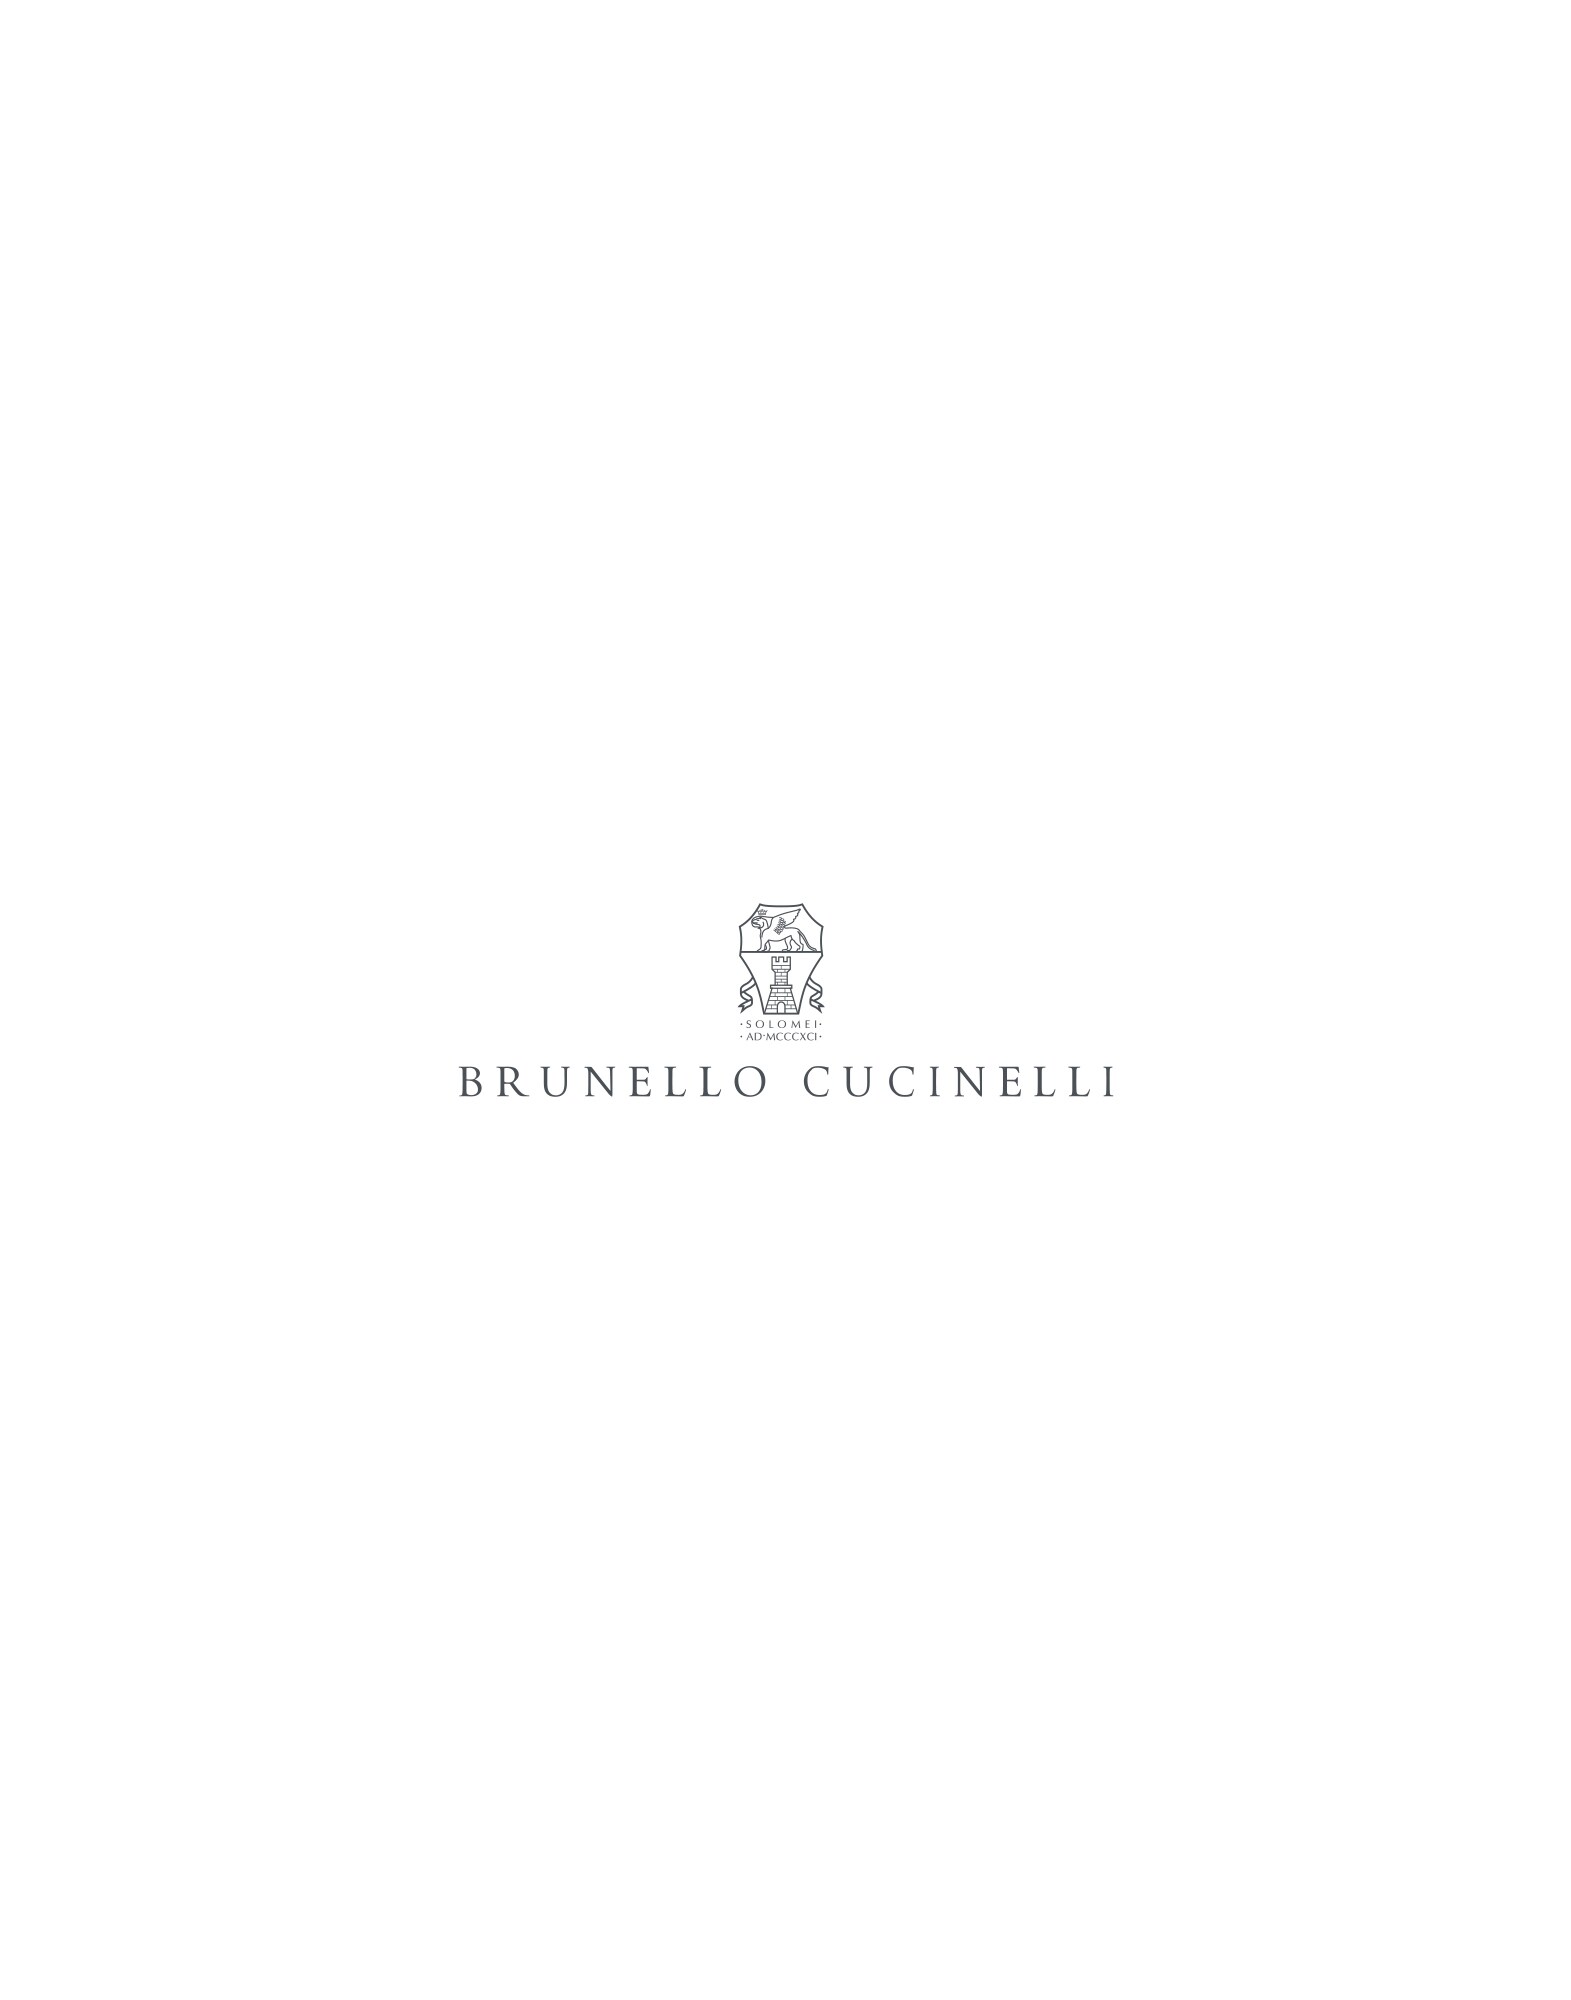 Brunello Cucinelli wechat profile